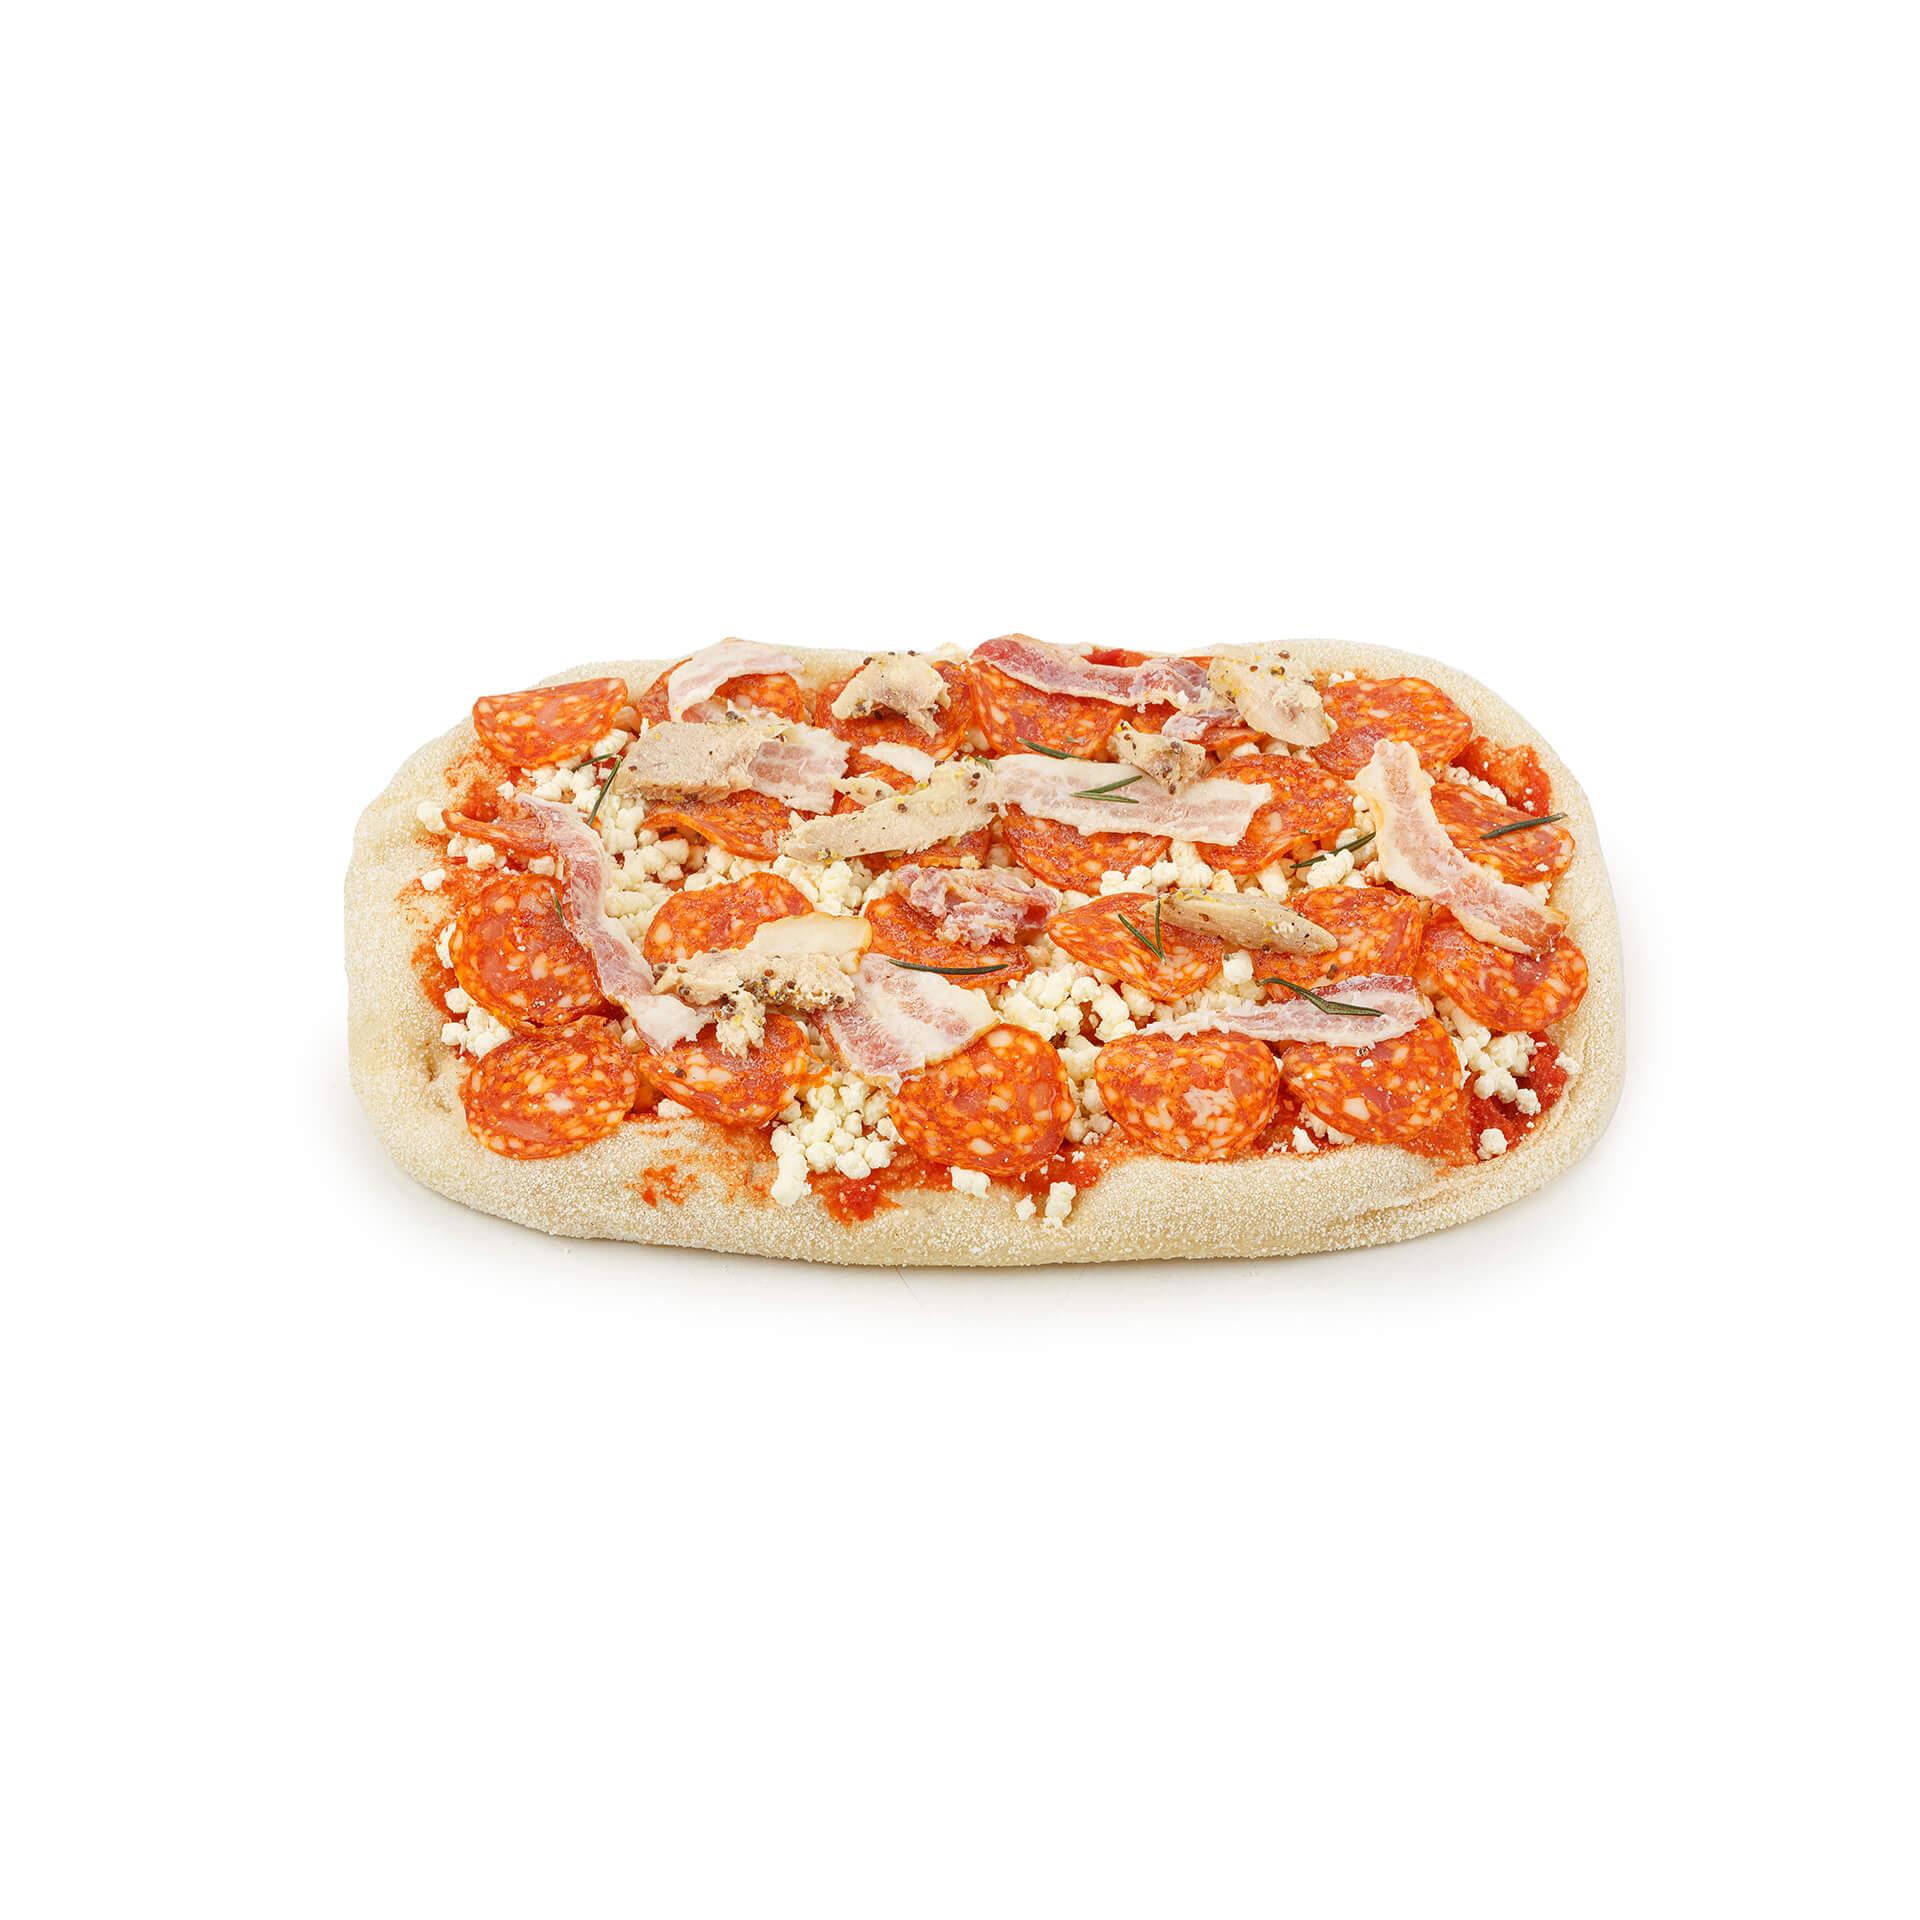 Римская пицца Maestrello Мясная с чоризо беконом и курицей 445 гр., картон